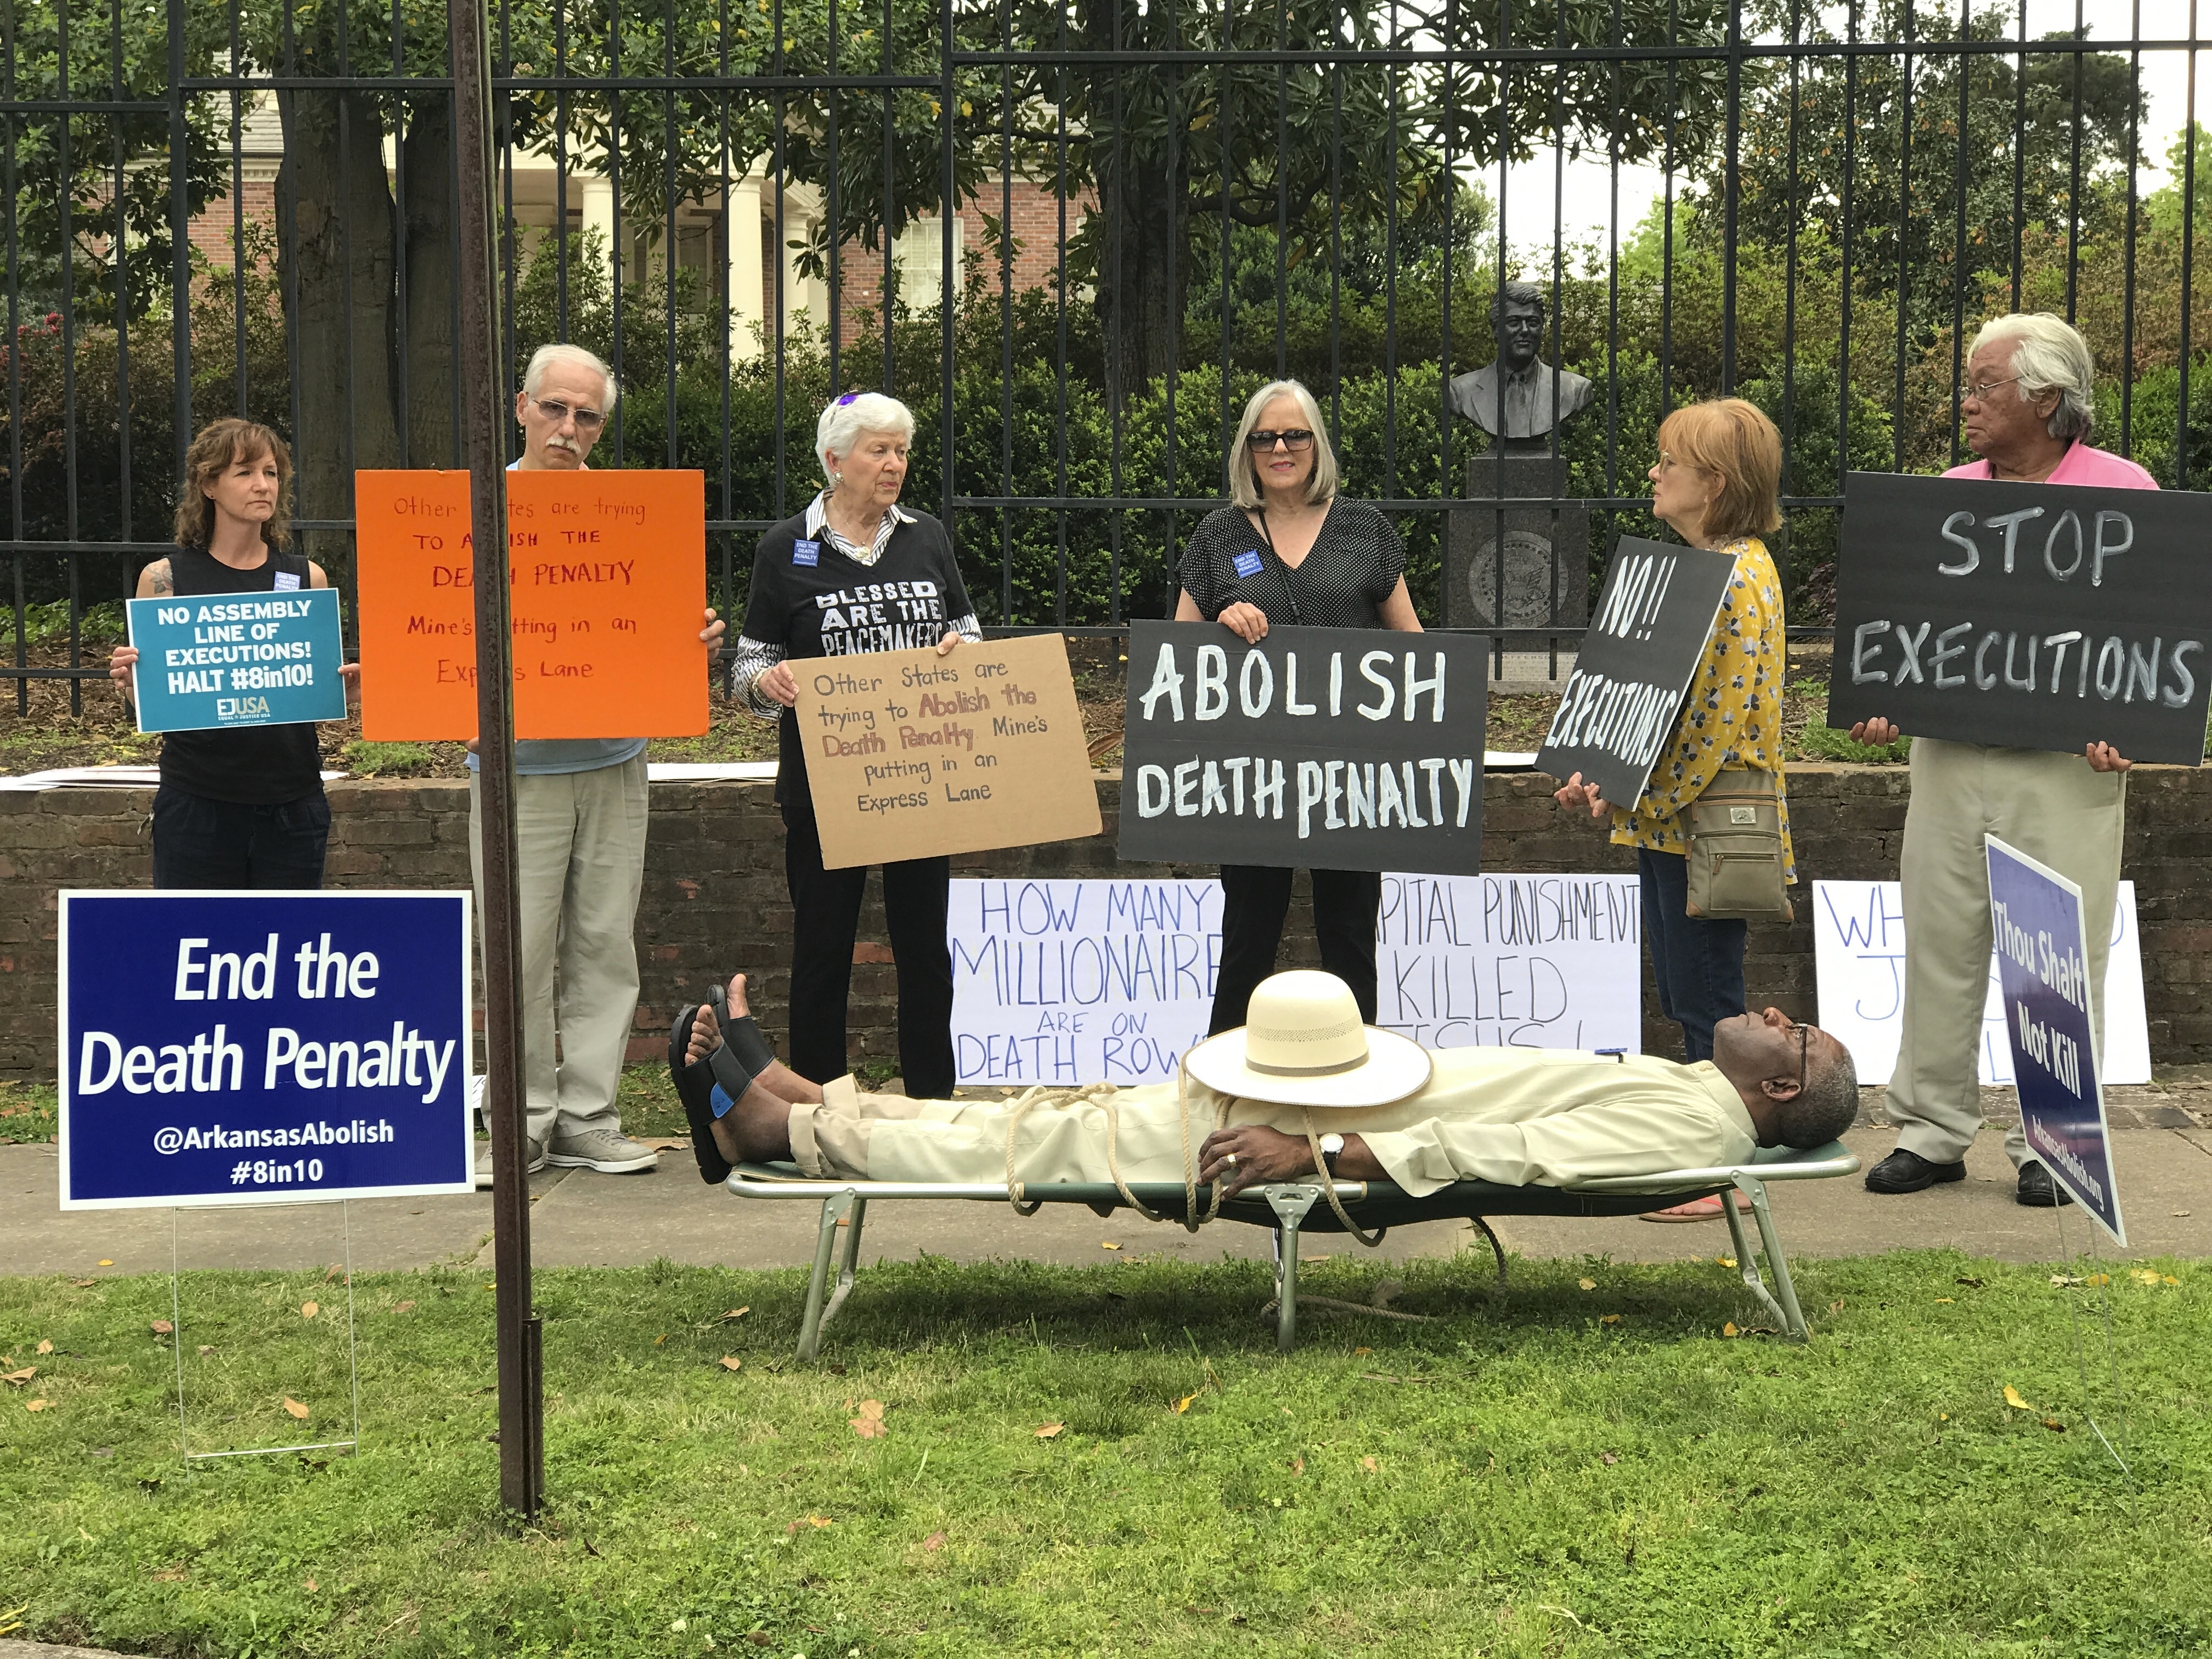 Противници на смъртното наказание демонстрираха в петък в Литъл Рок, Арканзас